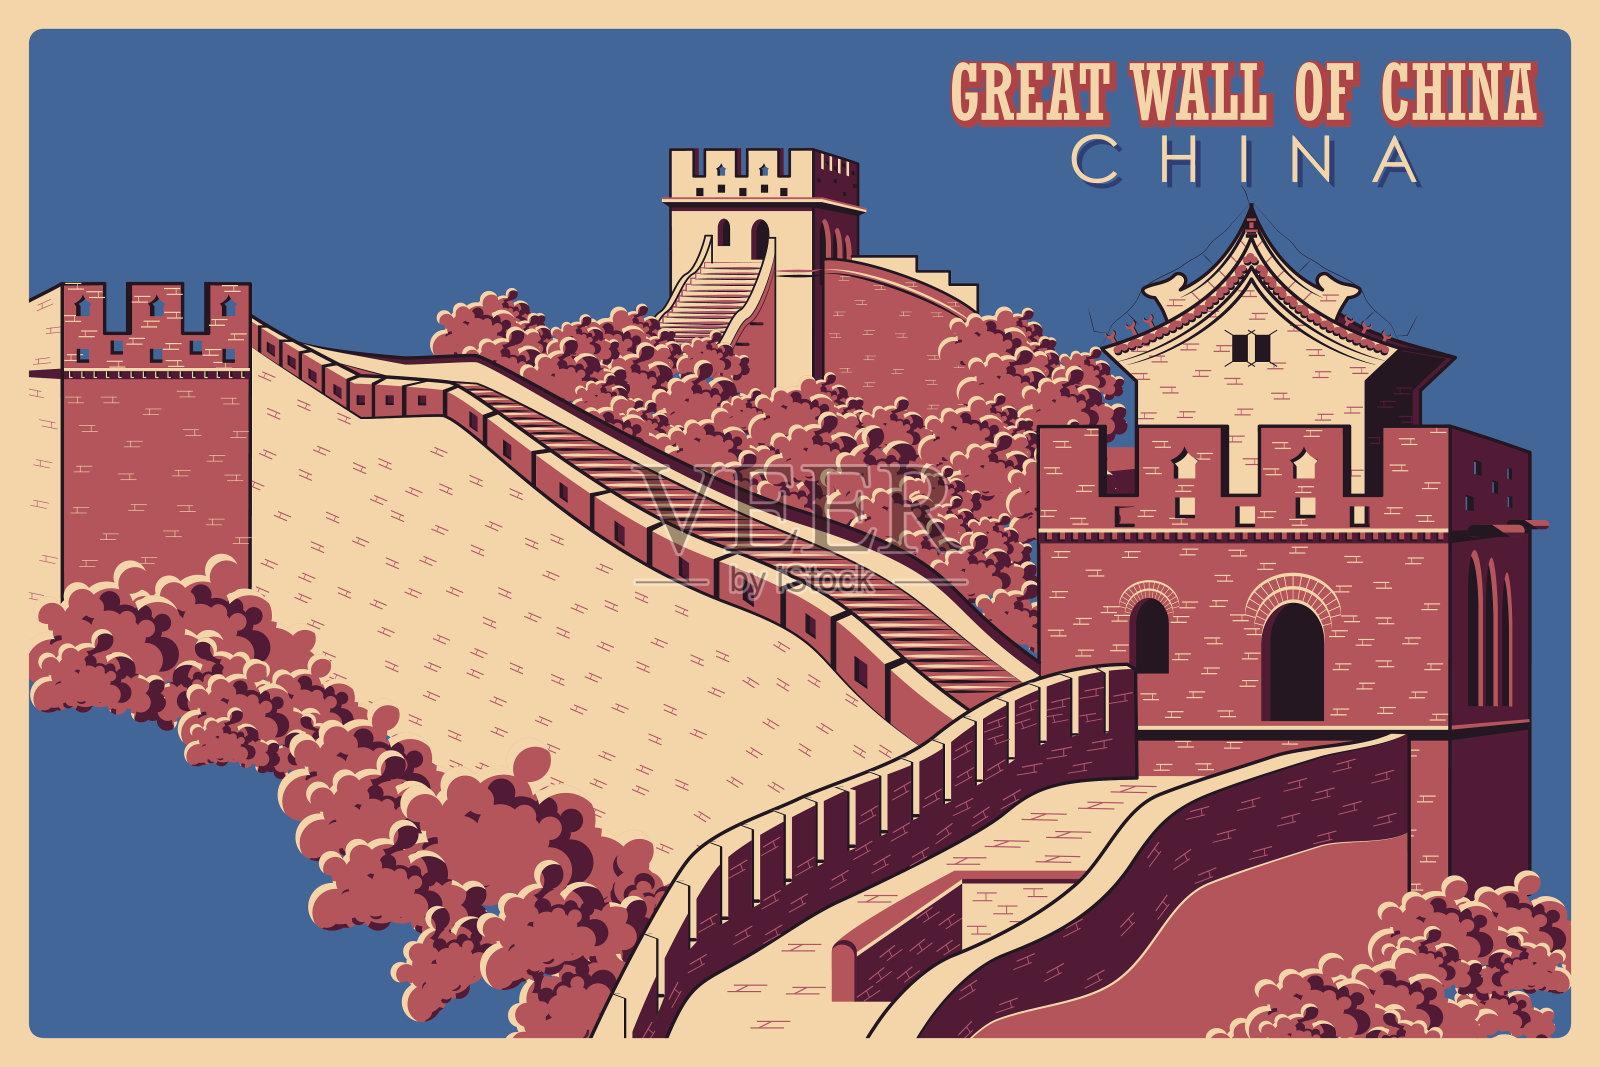 中国长城的复古海报设计模板素材